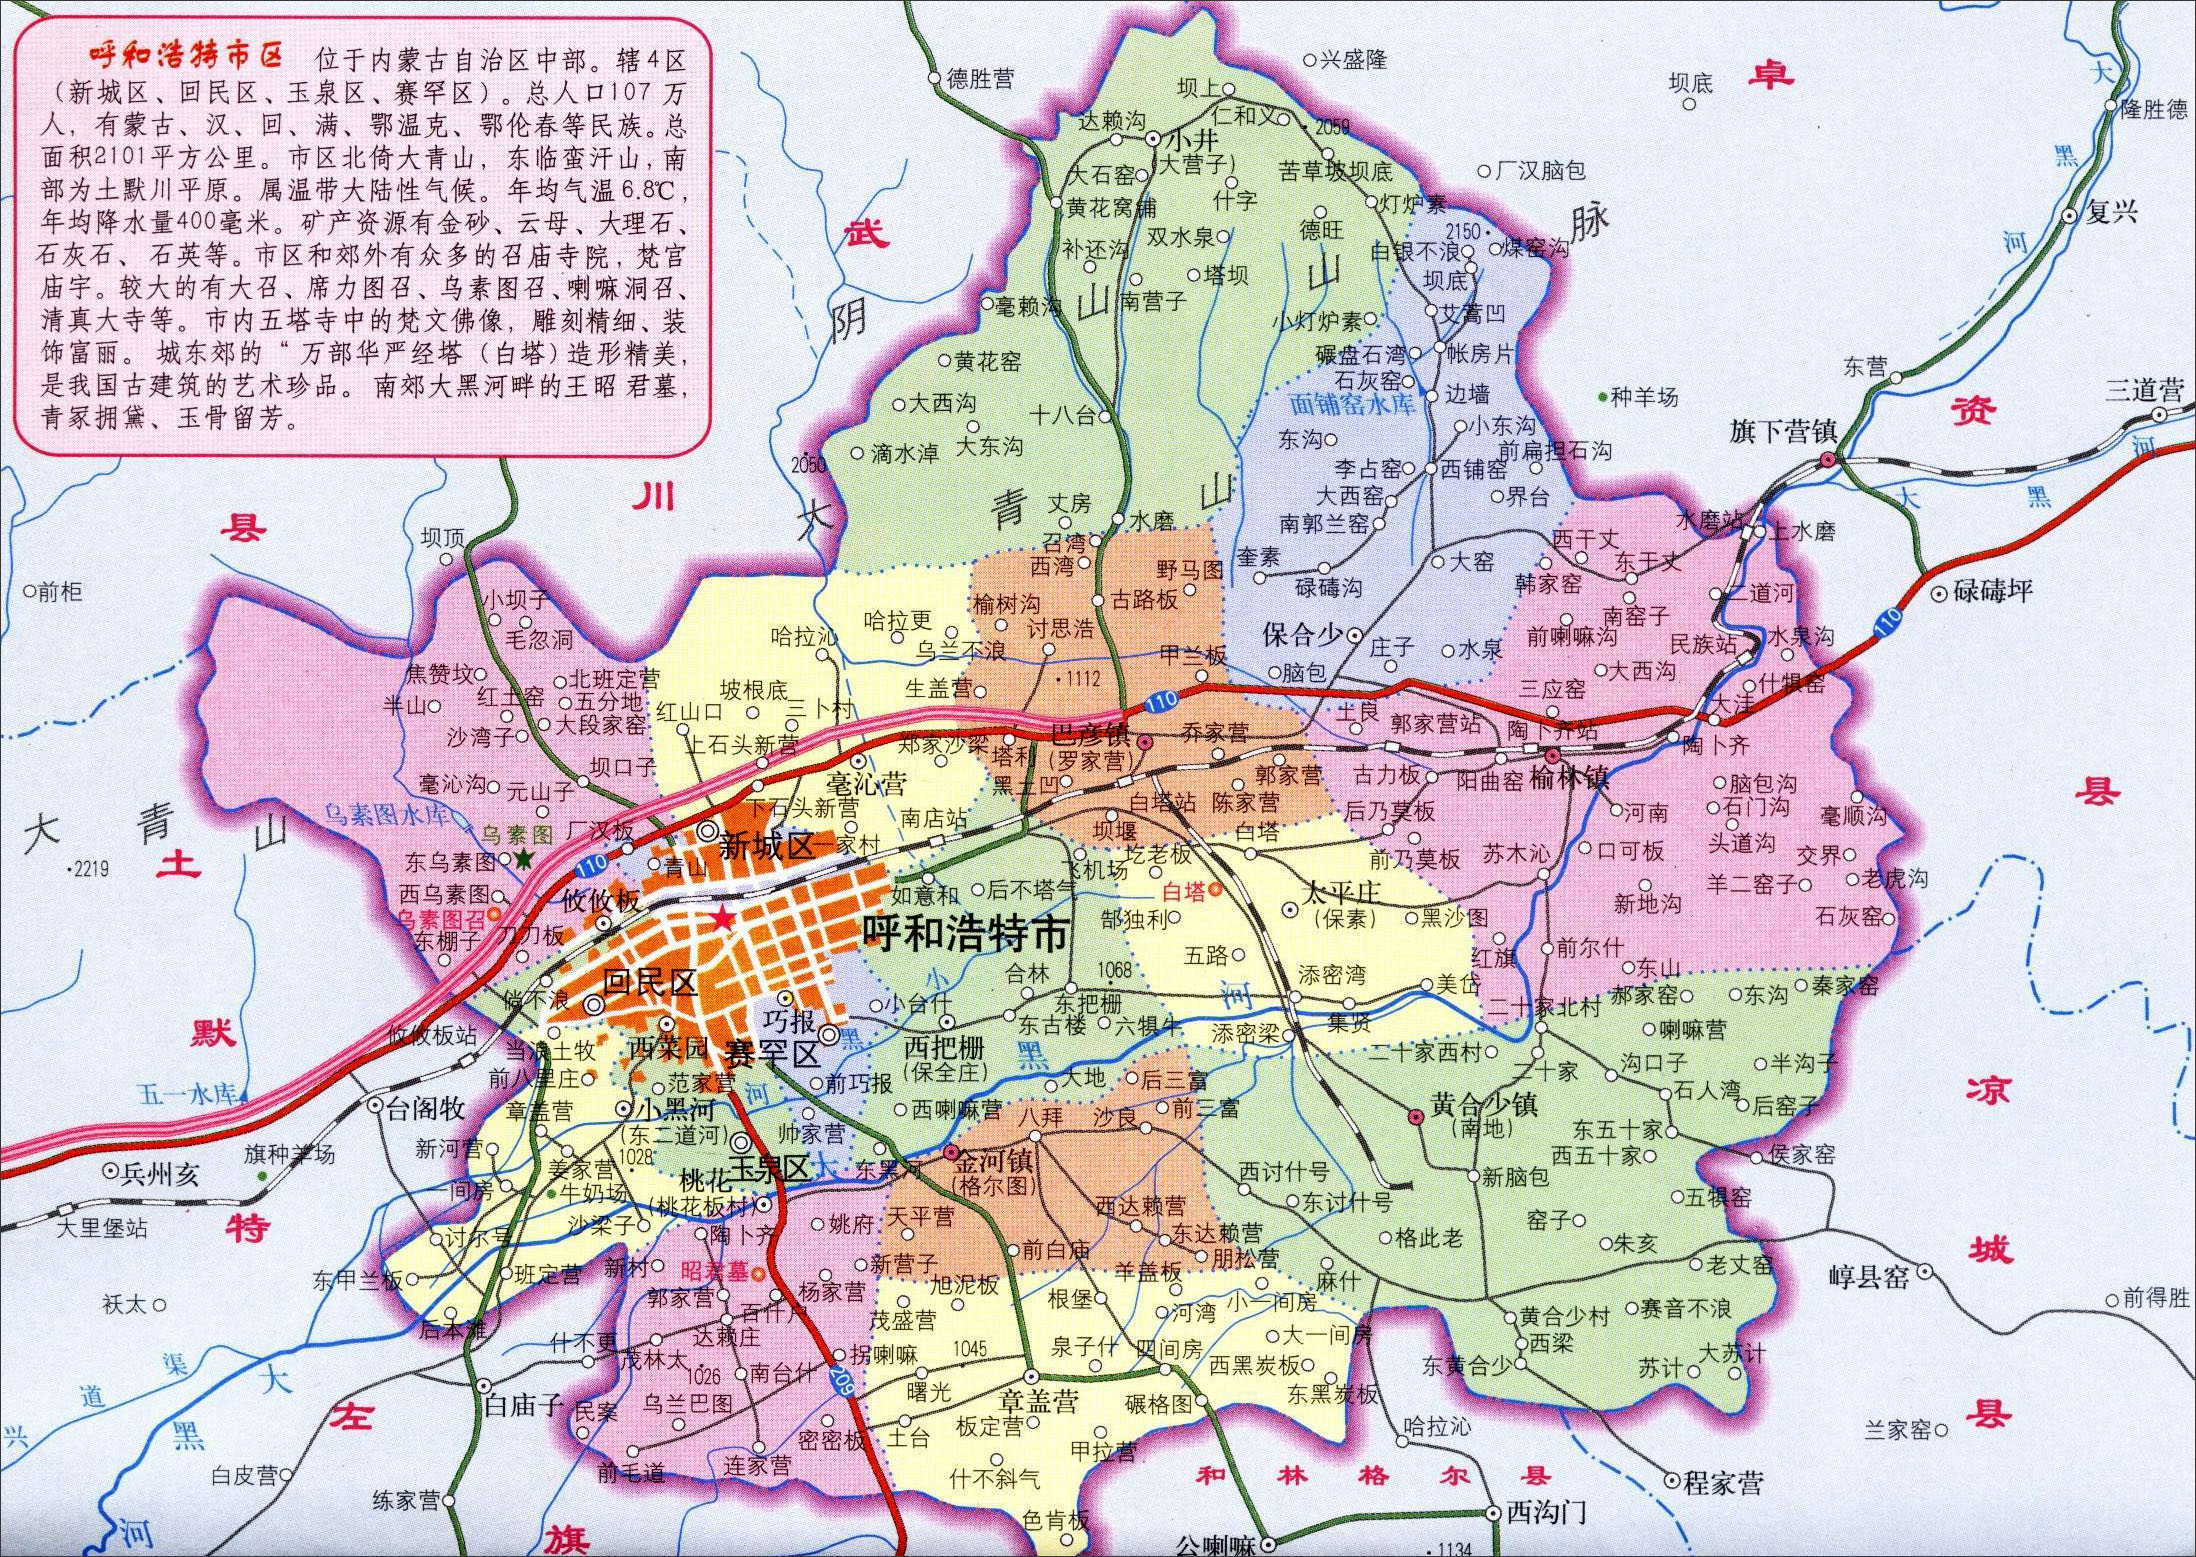 地图 内蒙古 呼和浩特  呼和浩特市区地图 相关: 呼和浩特